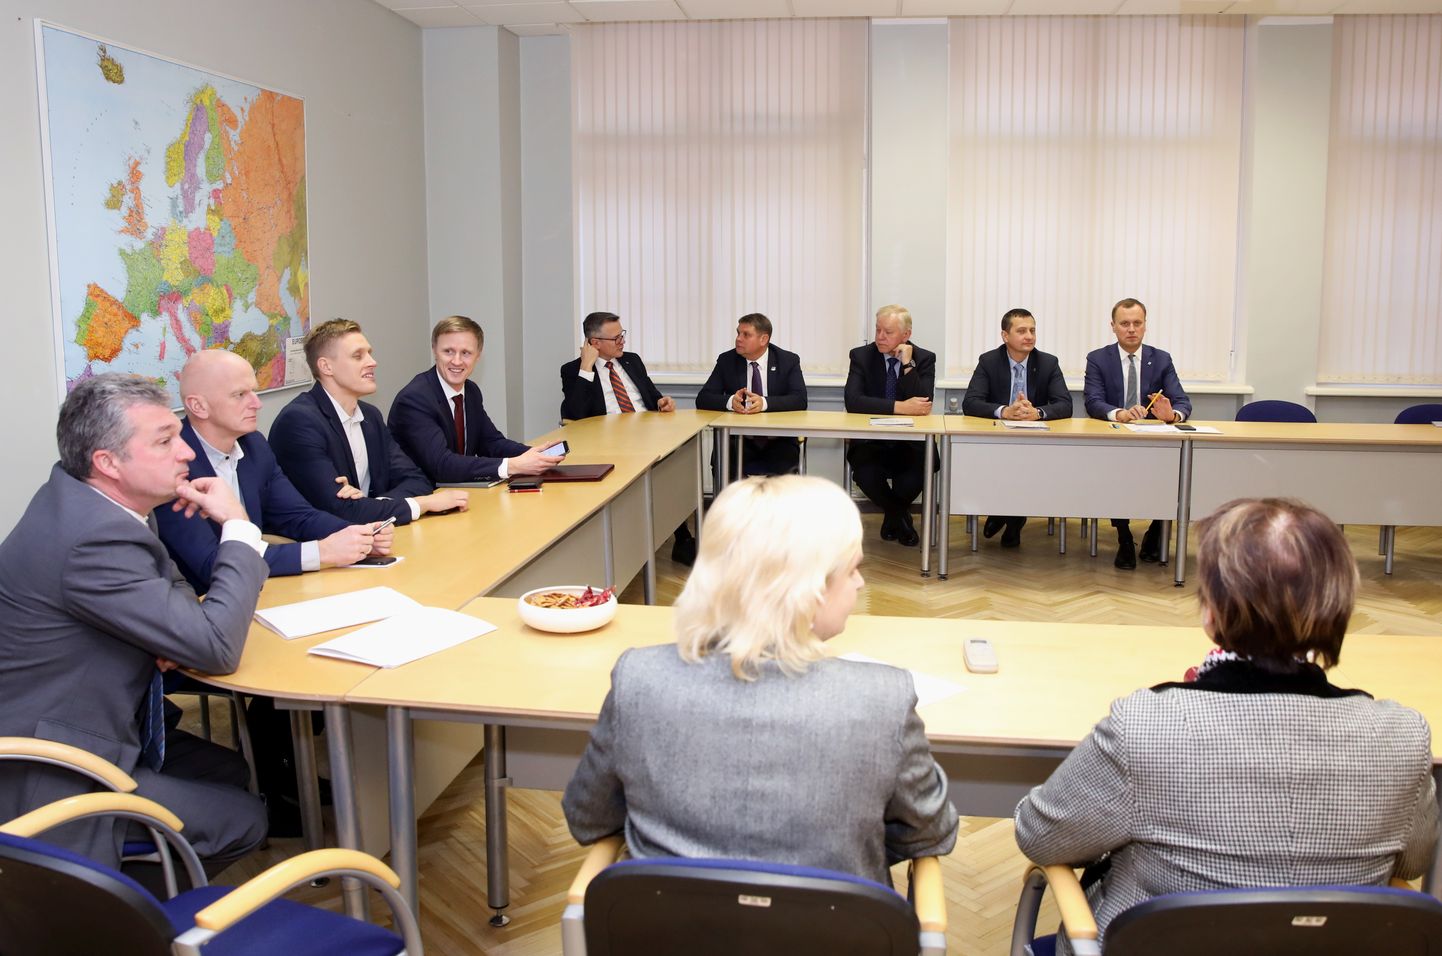 Partijas "KPV LV", nacionālās apvienības "Visu Latvijai!"-"Tēvzemei un brīvībai"/LNNK, apvienības "Attīstībai/Par", Jaunās konservatīvās partijas, "Jaunā Vienotība" un Zaļo un zemnieku savienības Saeimā ievēlēto deputātu tikšanās, kurā spriež par valdības veidošanu.